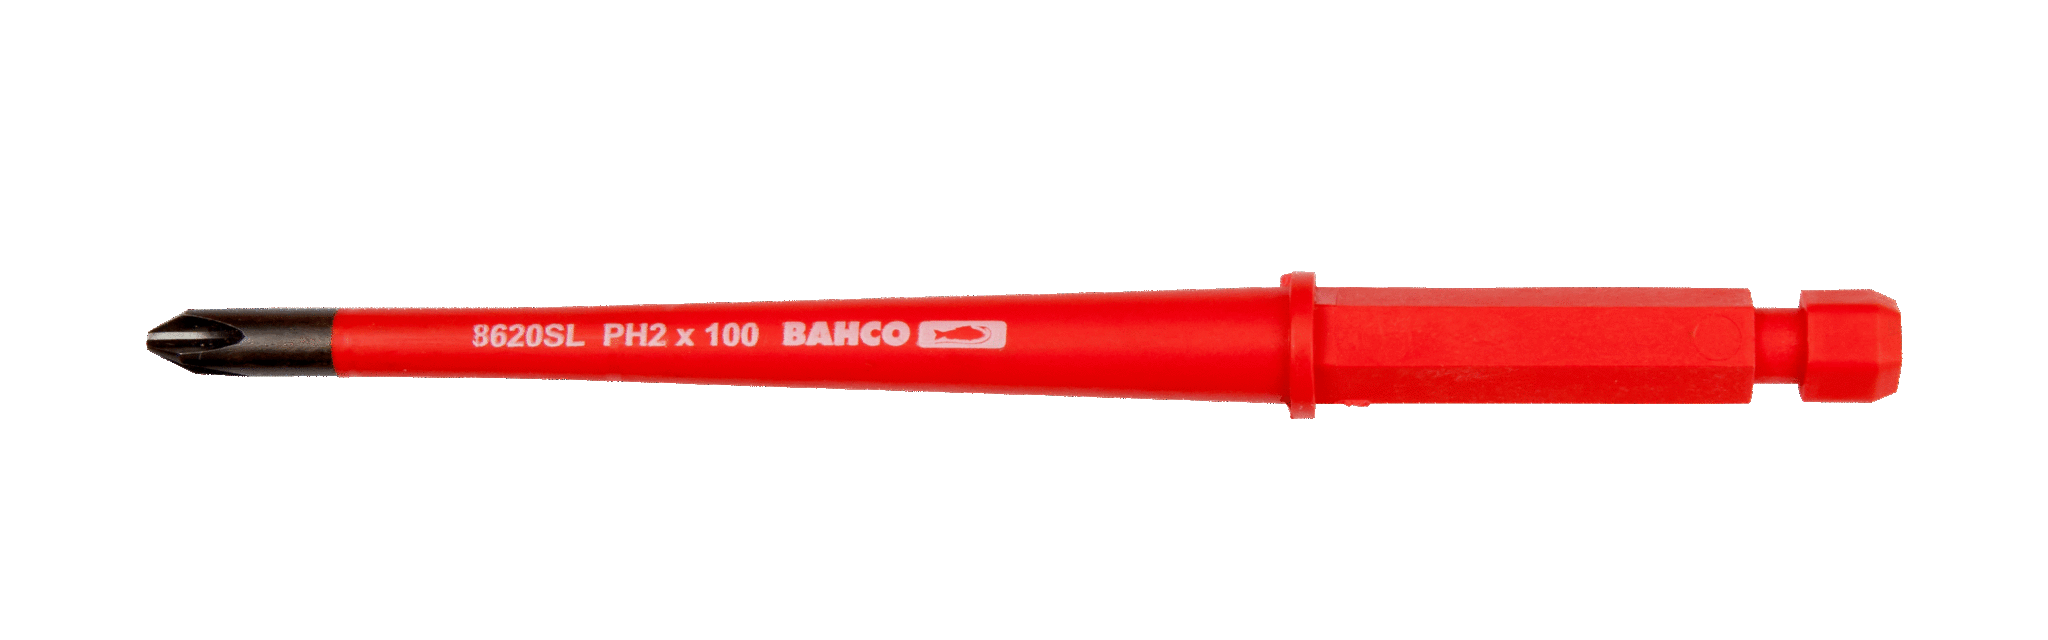 Grot wymienny izolowany SLIM kombinowany do śrub 5.0/PH1 x 100 mm do wkrętaka 808060, 2 szt. BAHCO